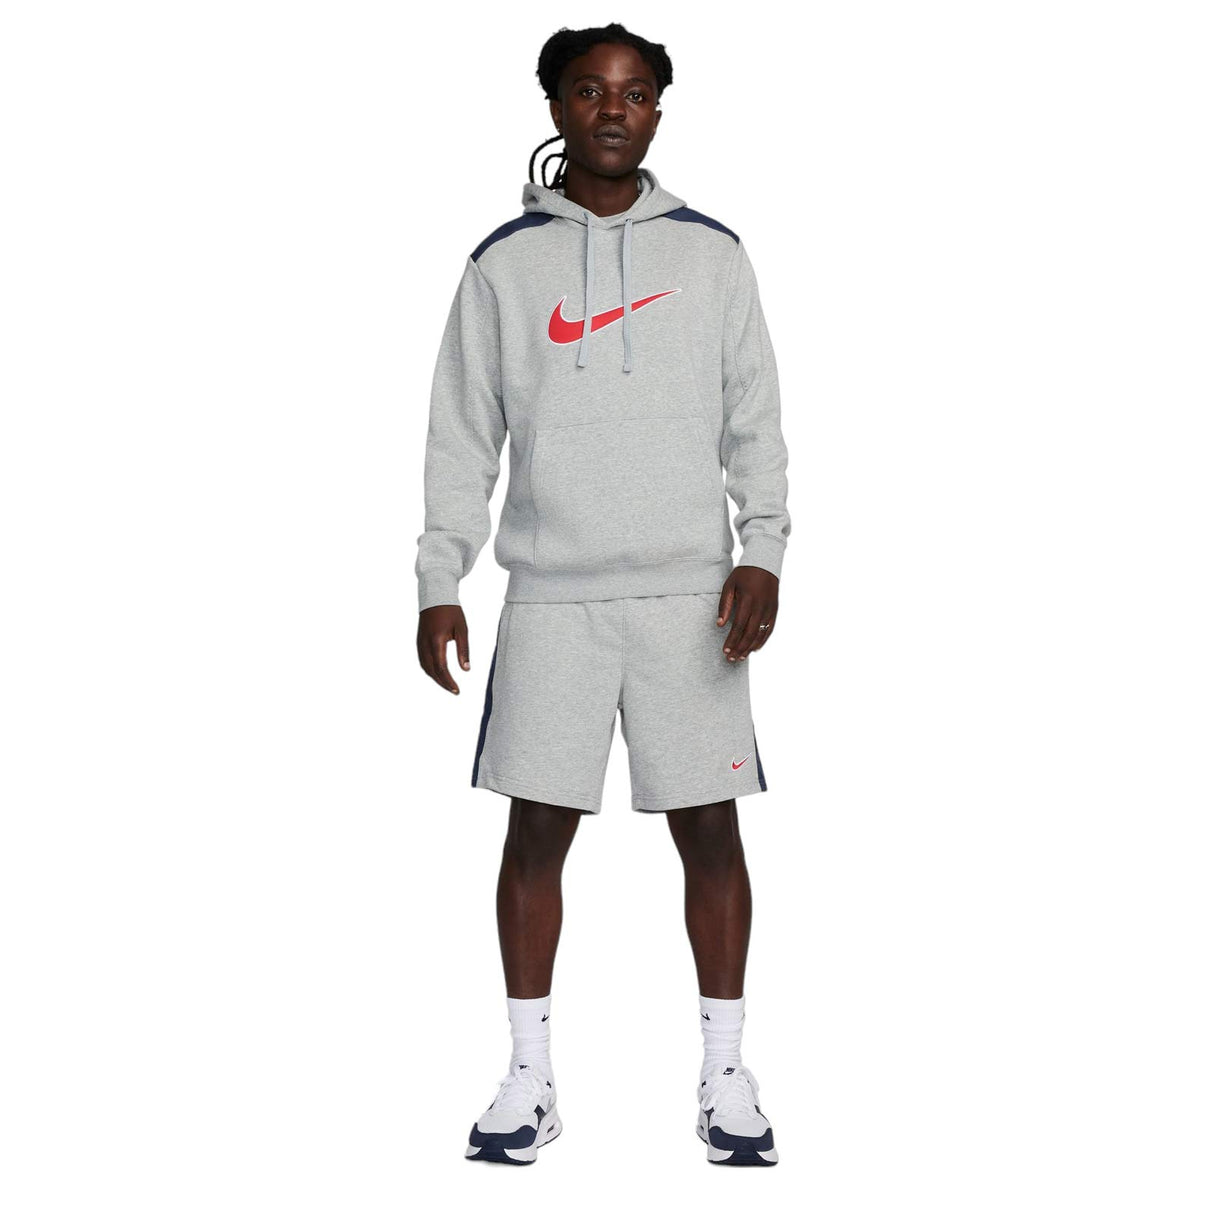 Nike Sportswear Fleece Hoodie